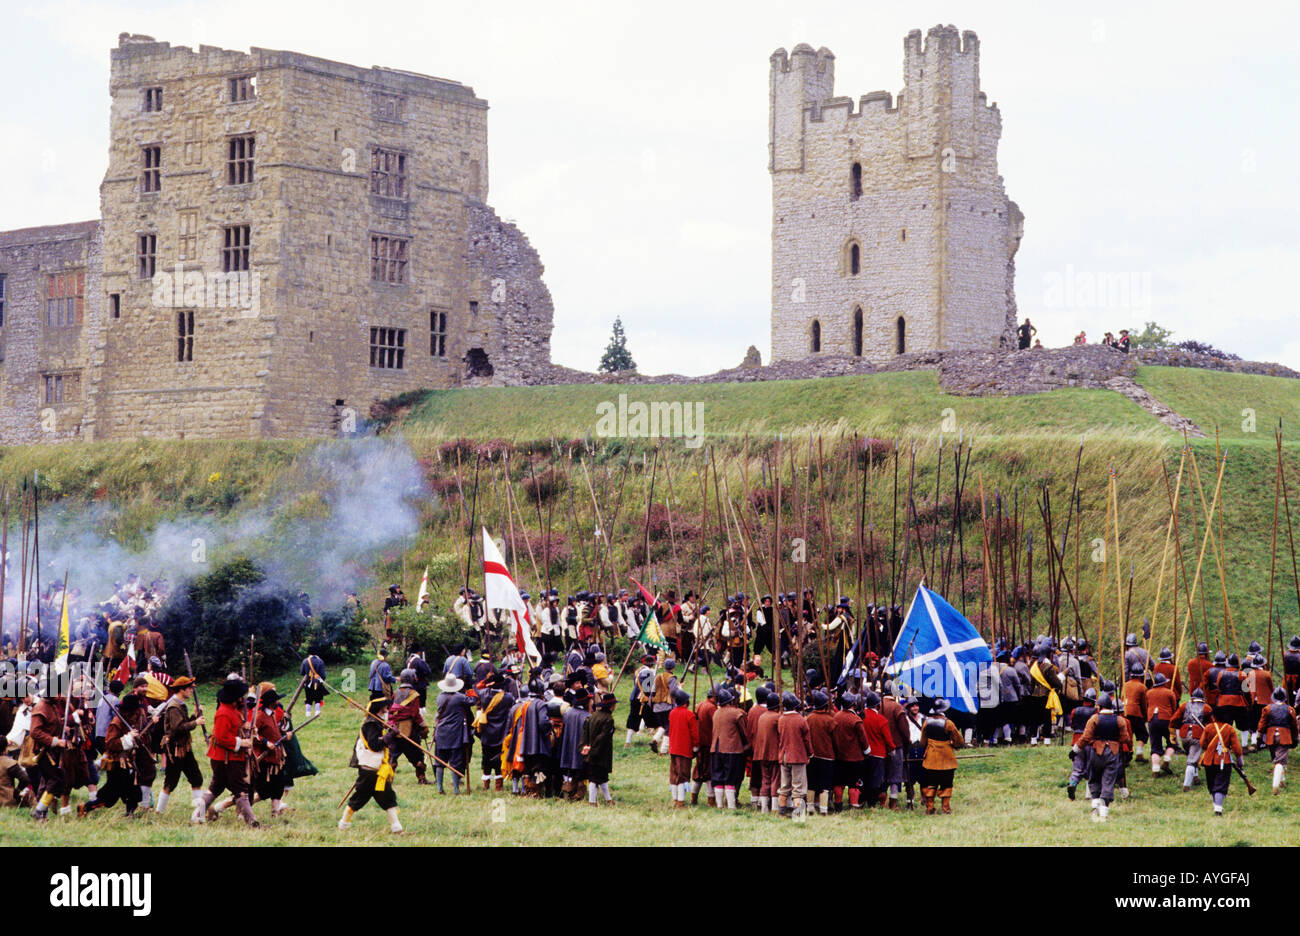 Castello di Helmsley Guerra Civile Inglese rievocazione dello Yorkshire Regno Unito Inghilterra storica battaglia soldati pikes pikemen bandiere pistola banner Foto Stock